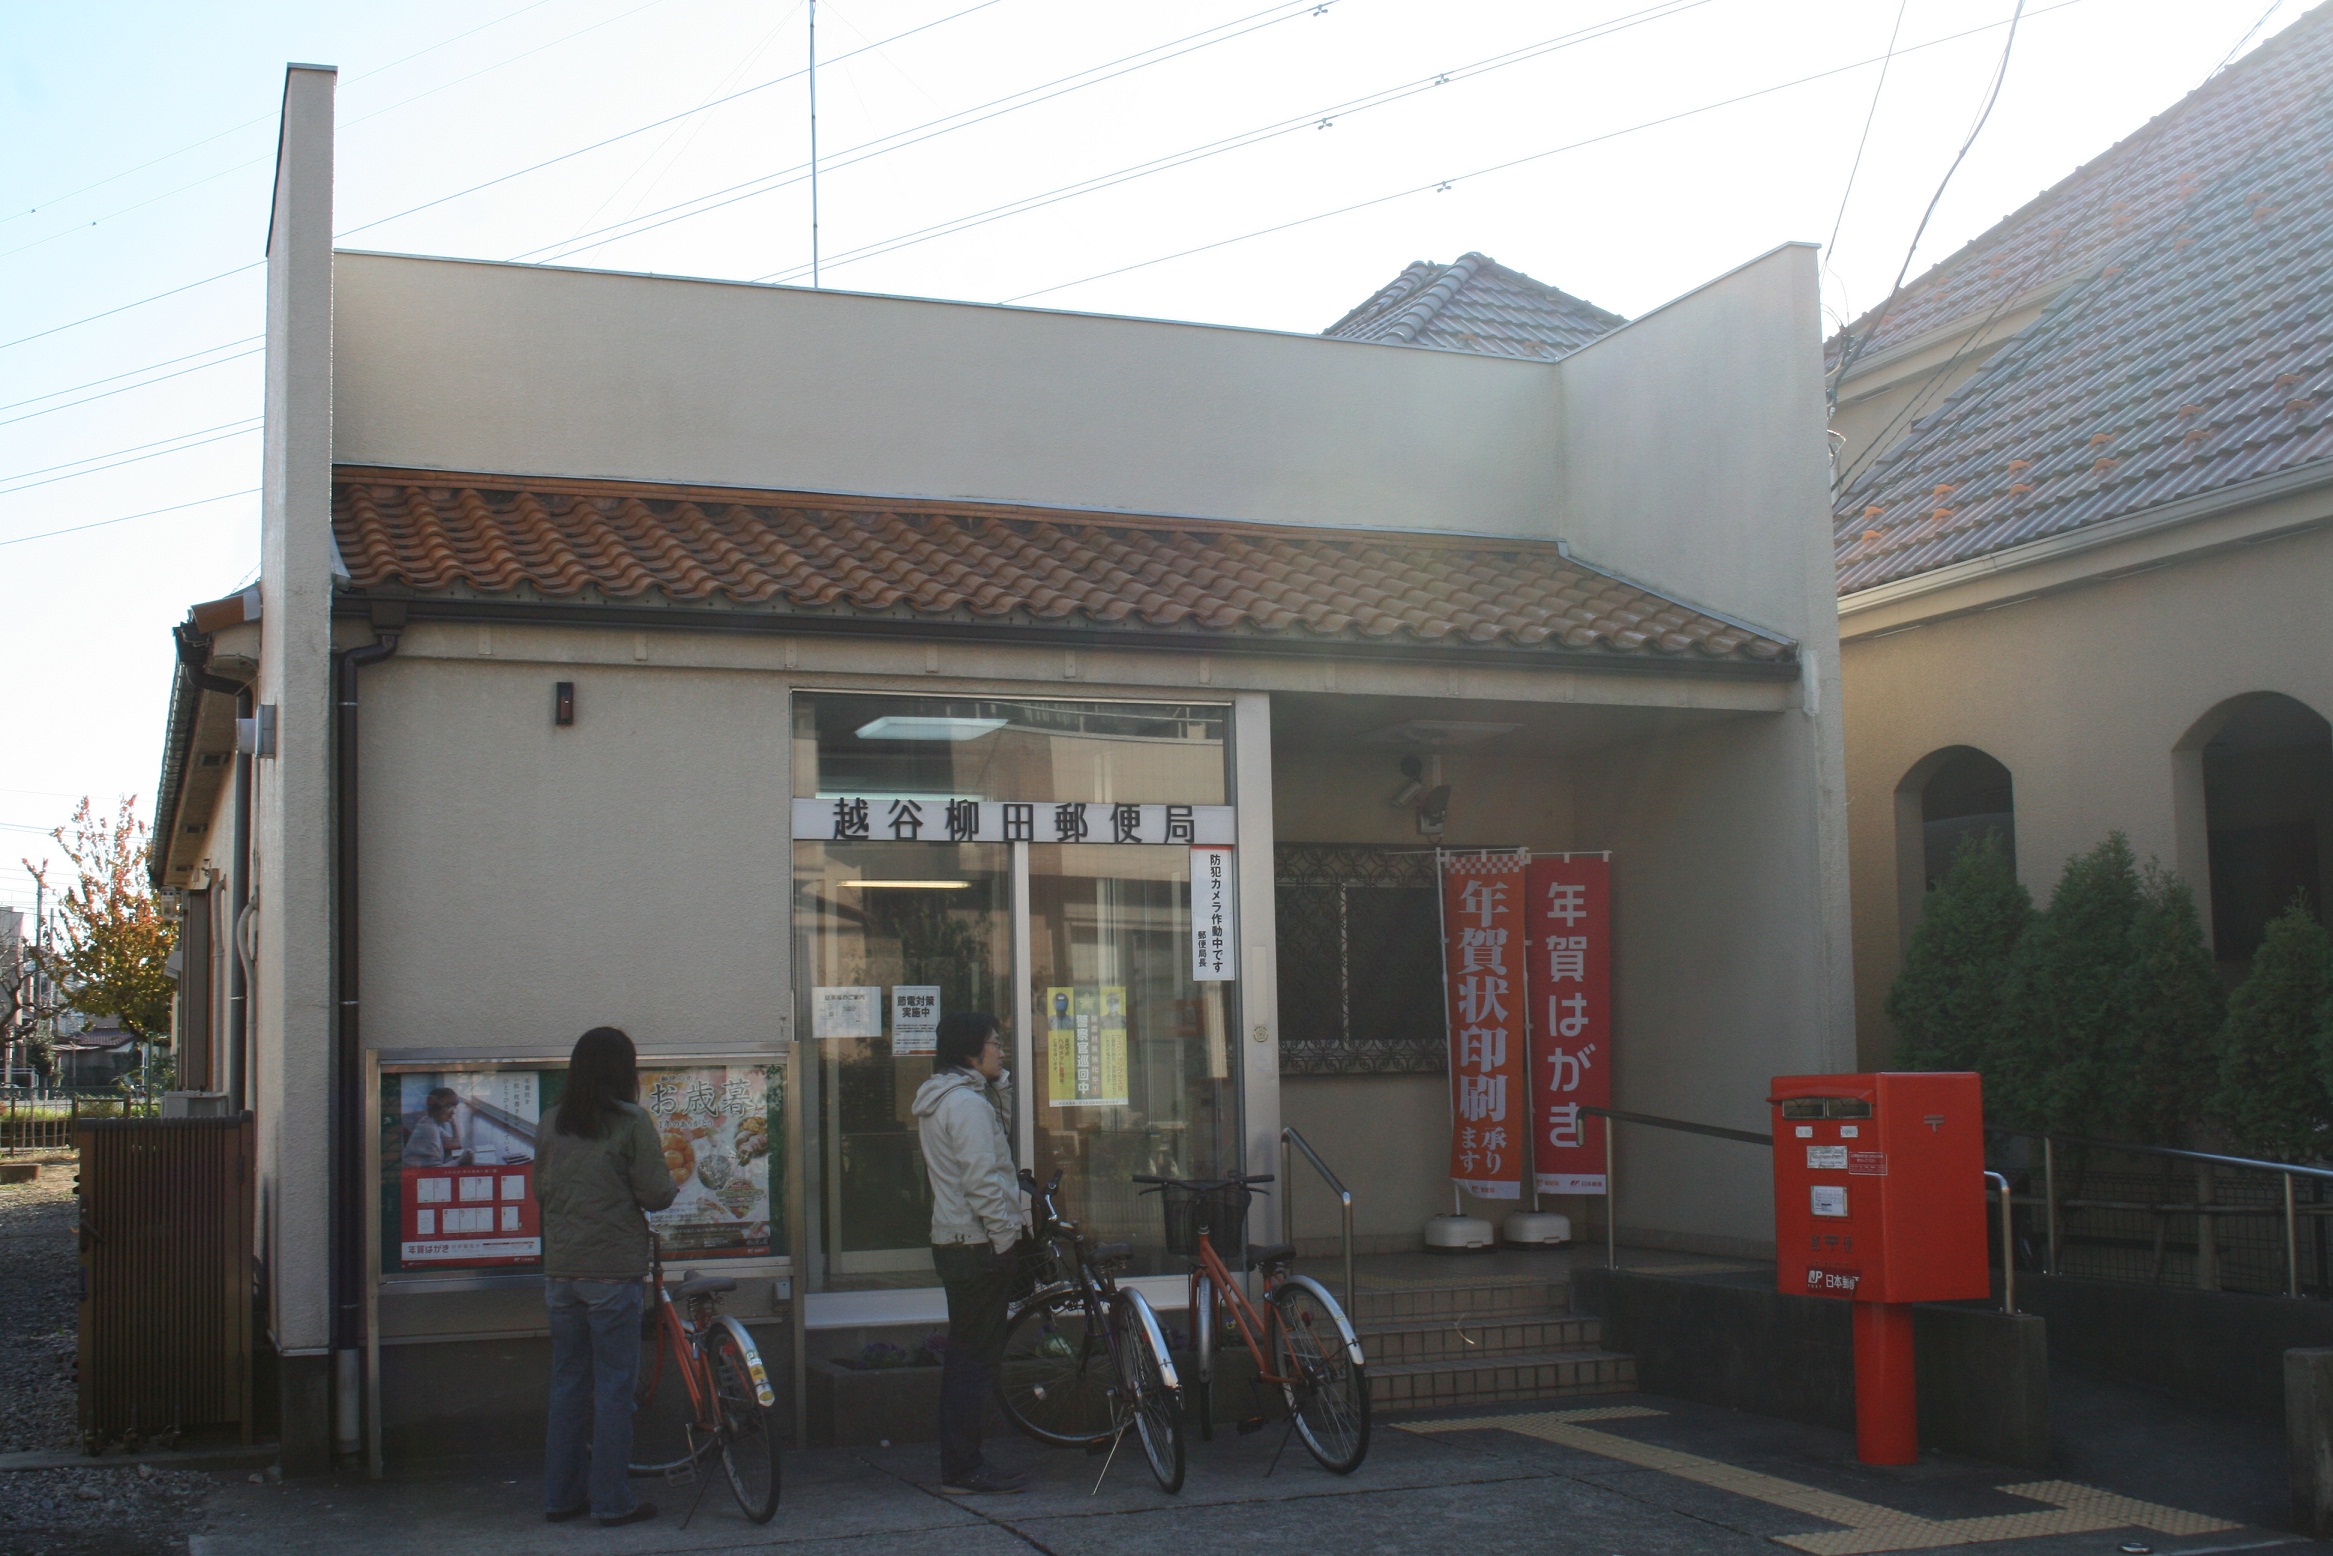 Bank. 270m to Japan Post Bank Yanagida shop (Bank)